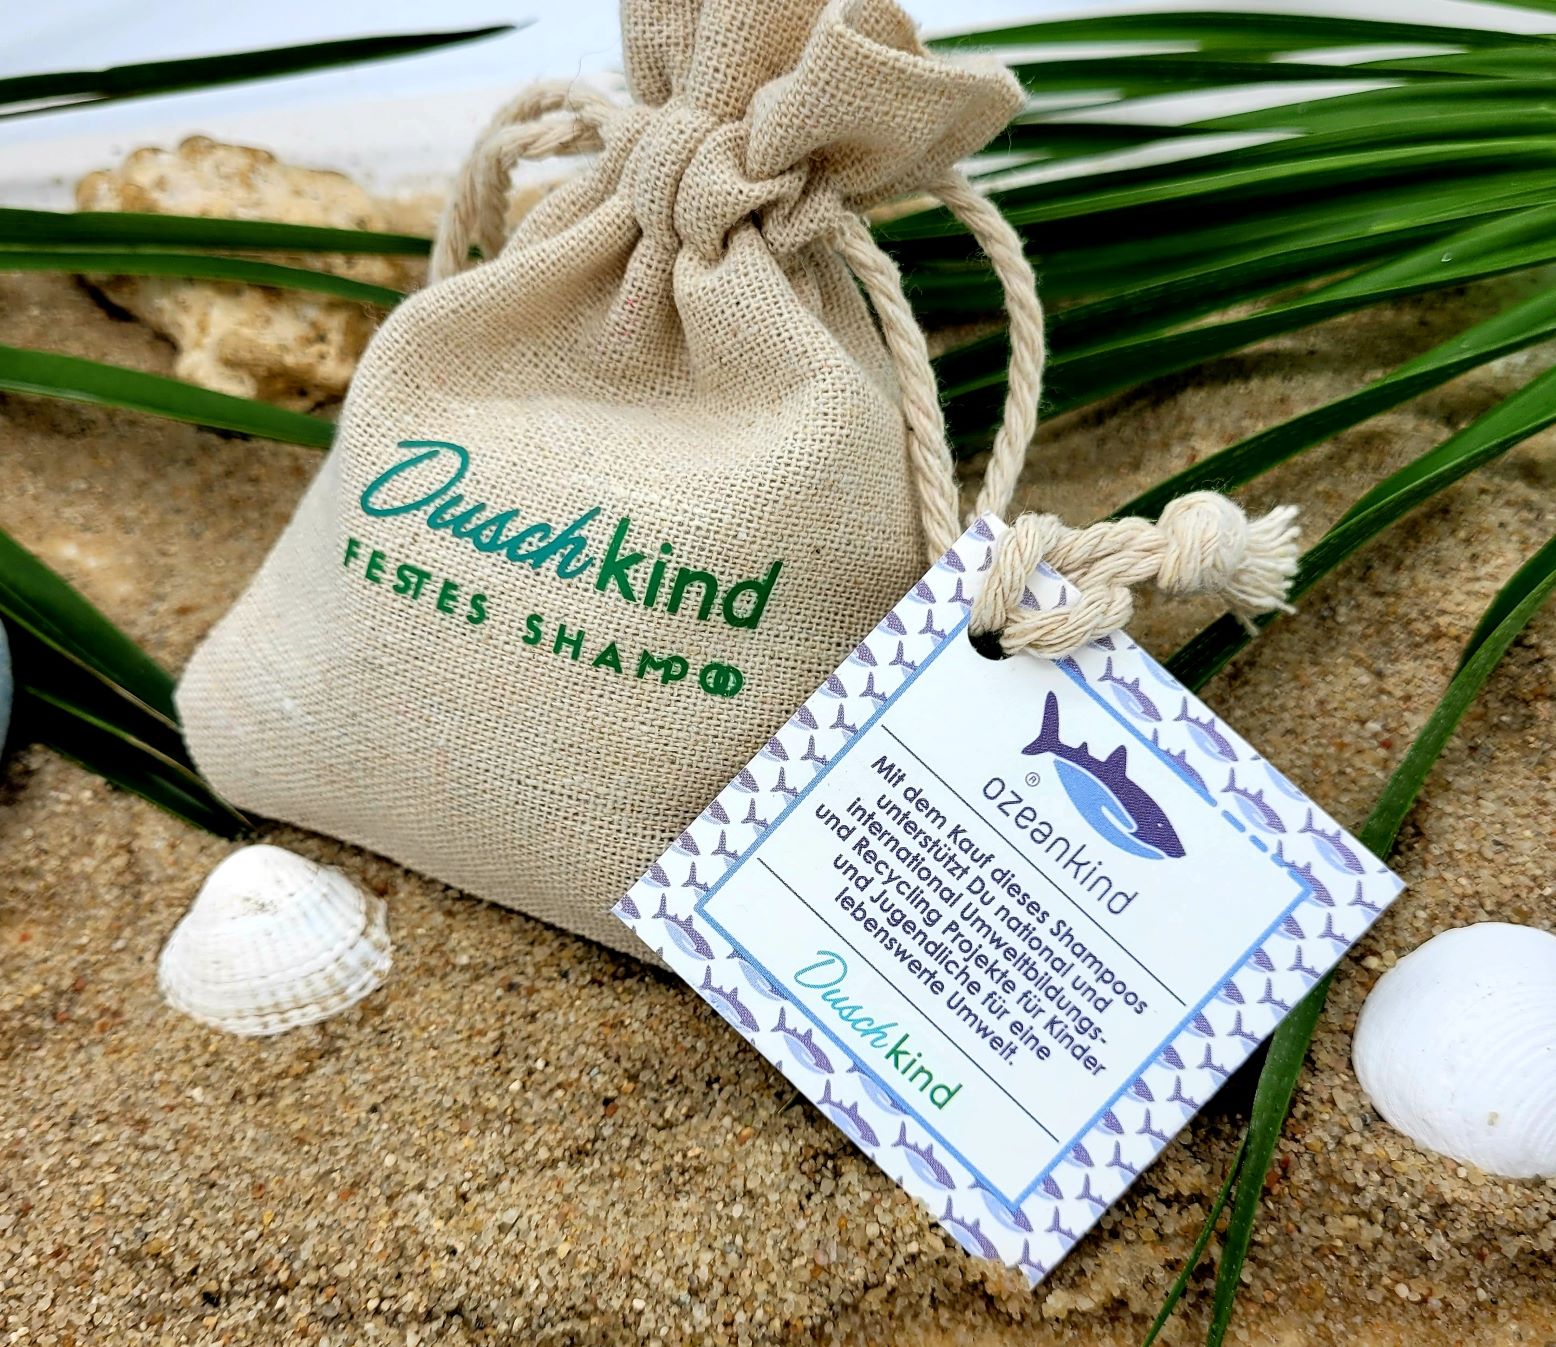 festes Shampoo Ozeankind Umweltschutz